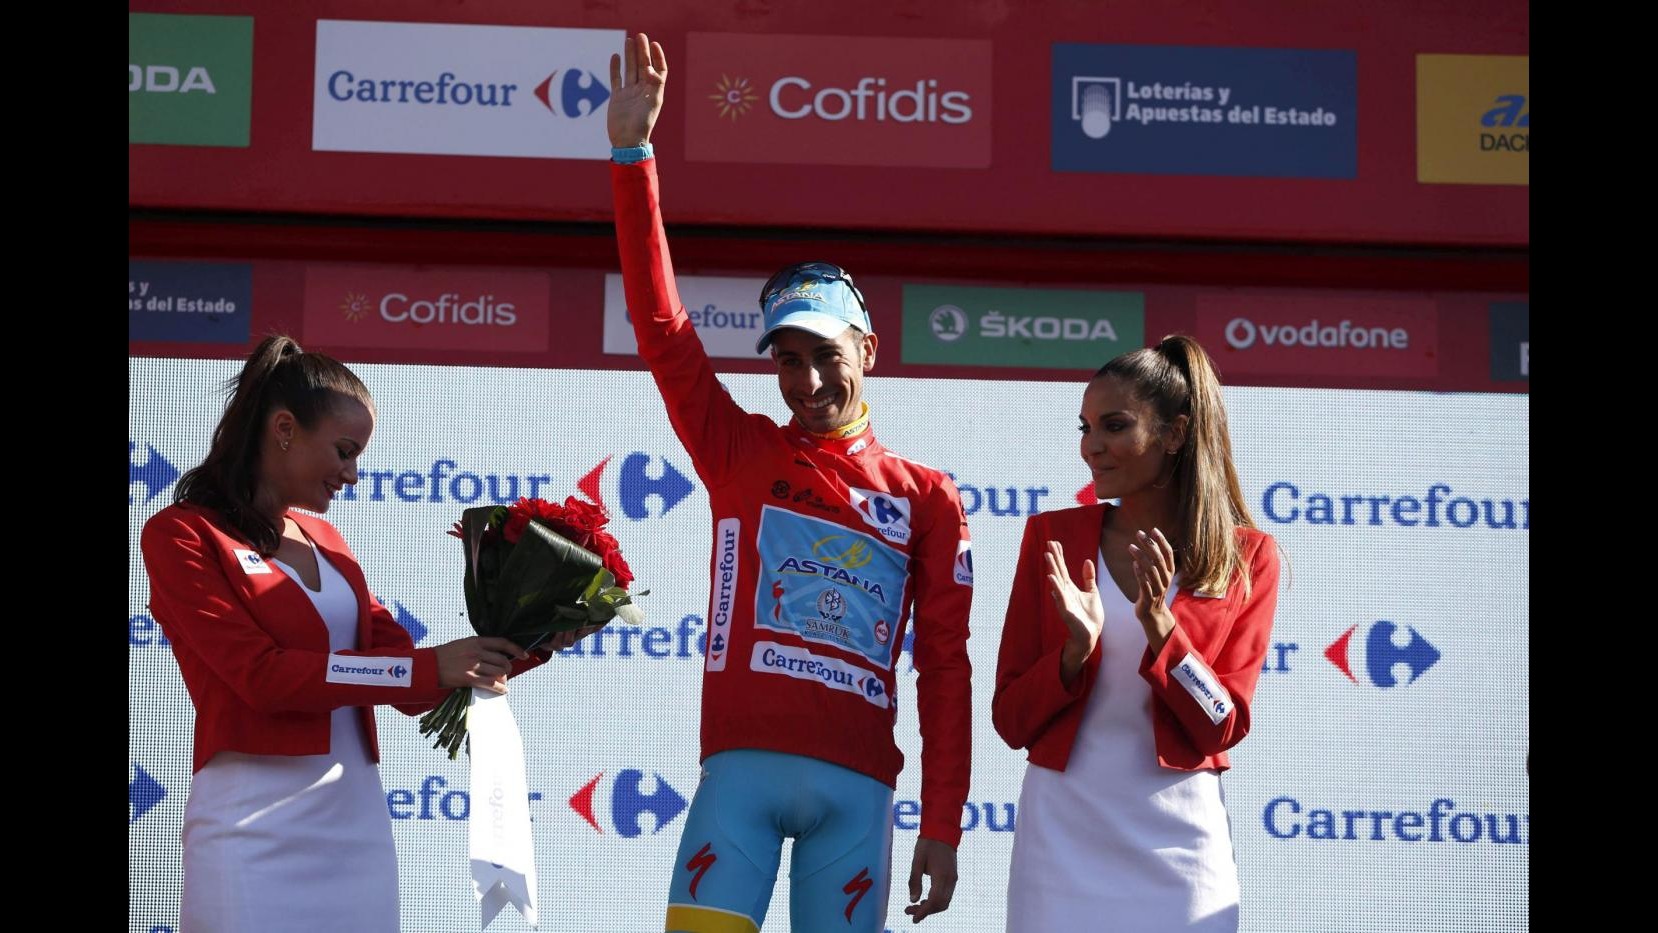 Ciclismo, Fabio Aru vince la Vuelta di Spagna 2015: Ho realizzato un sogno